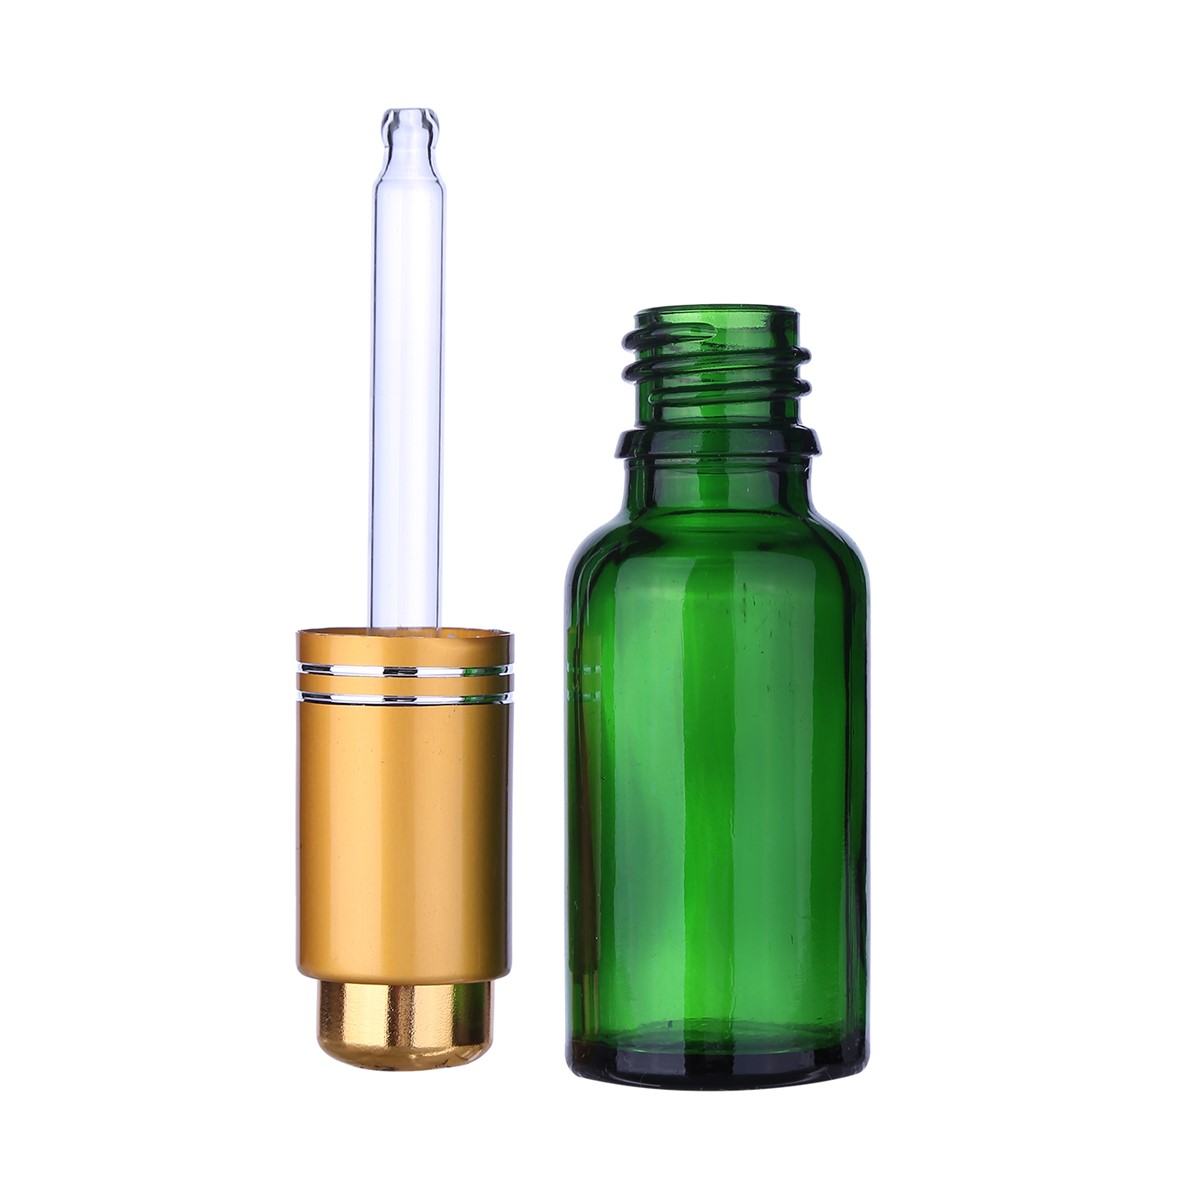 5ml10ml 15ml 20ml30ml50ml100ml green bottle eliquids glass dropper oil bottle